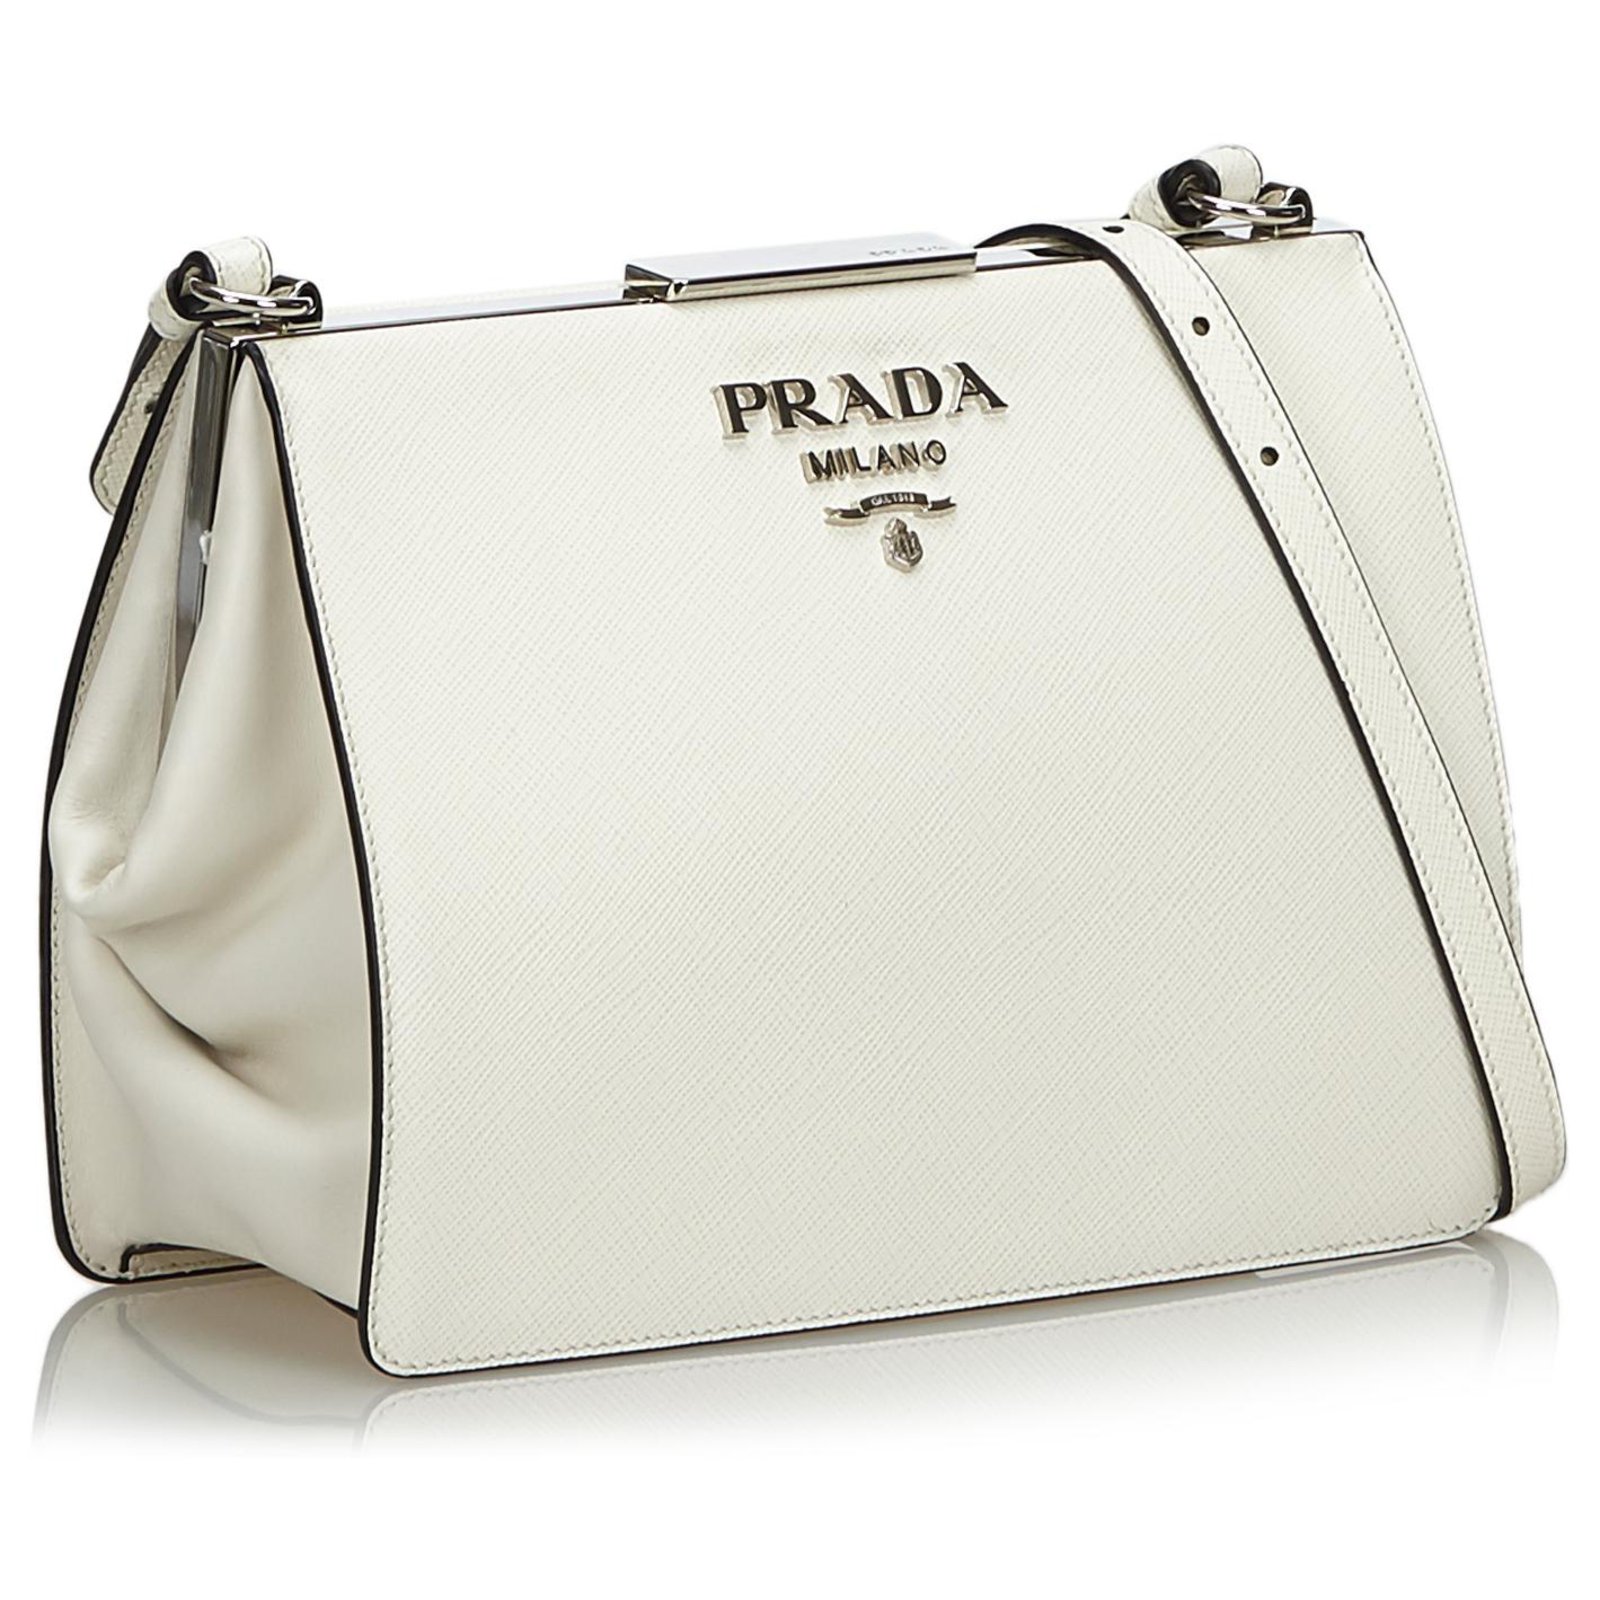 prada light frame saffiano leather bag